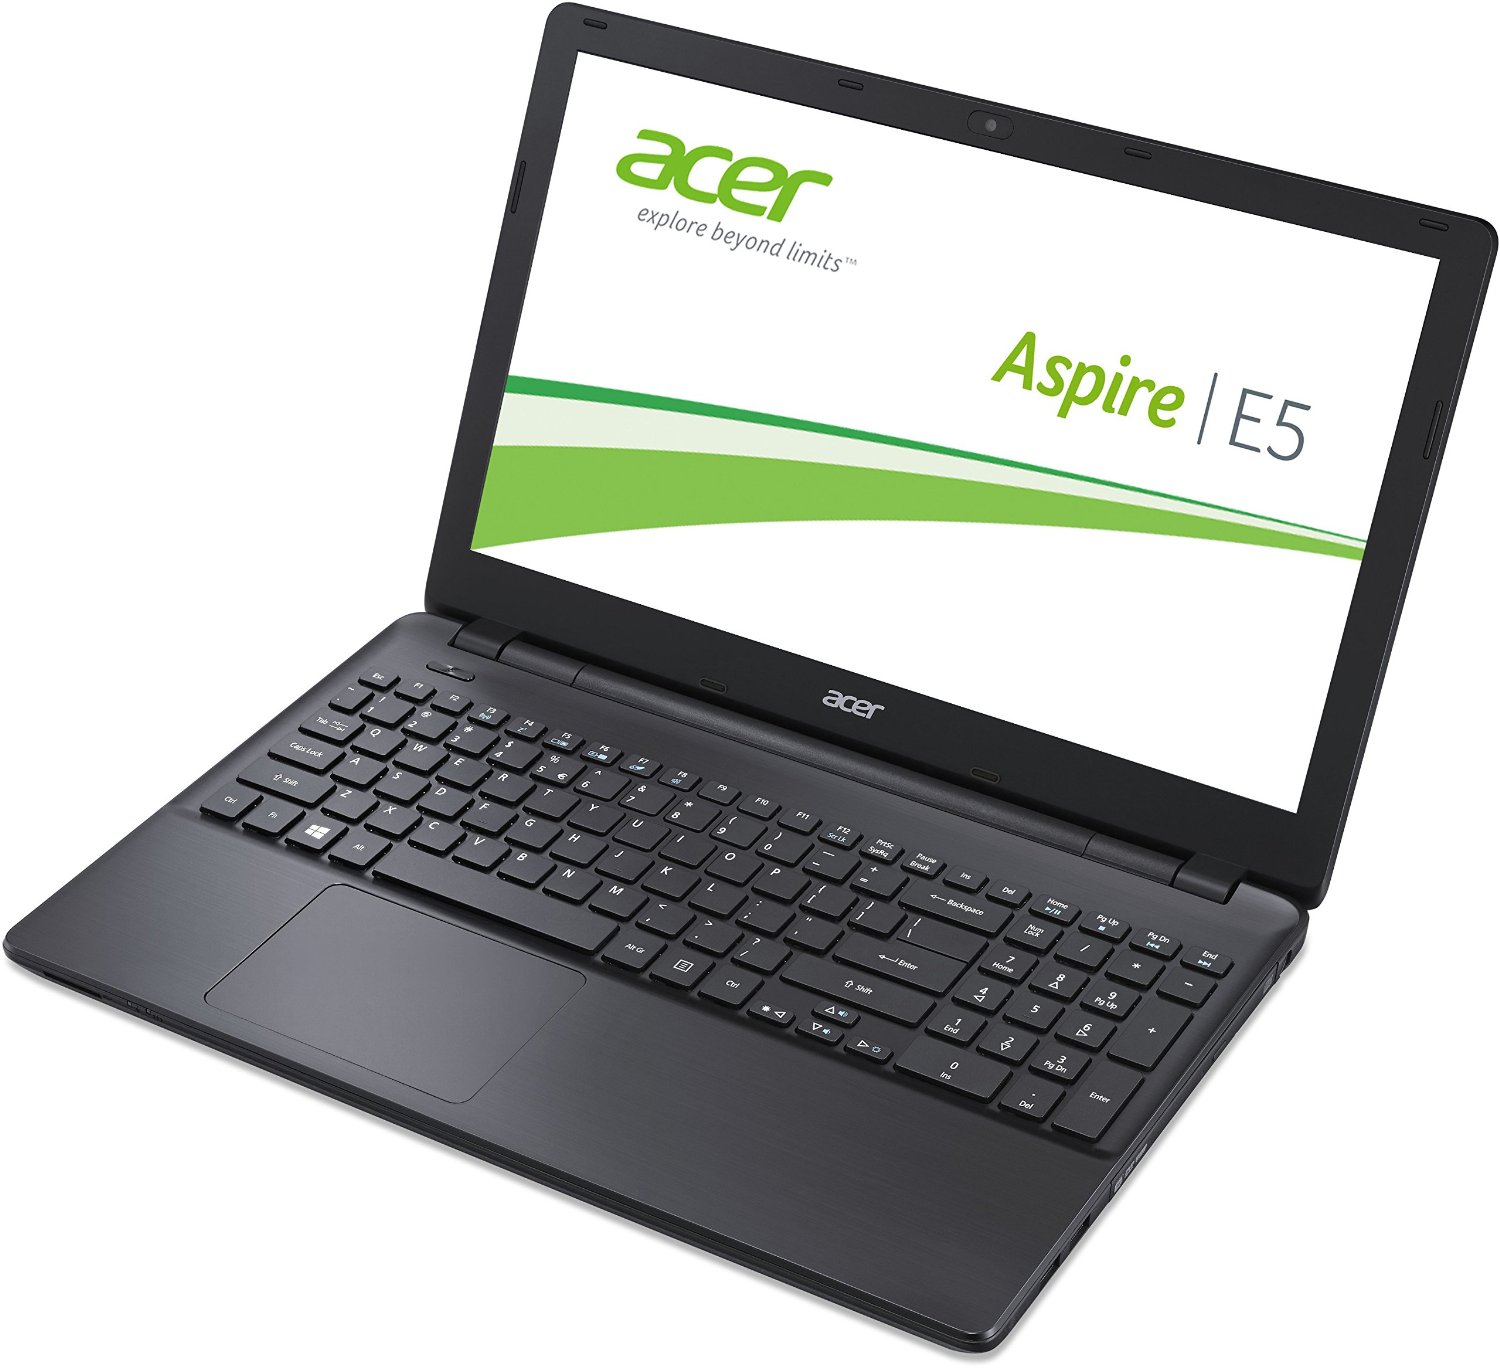 Bán laptop cũ Acer E5-572 giá rẻ tại Hà Nội